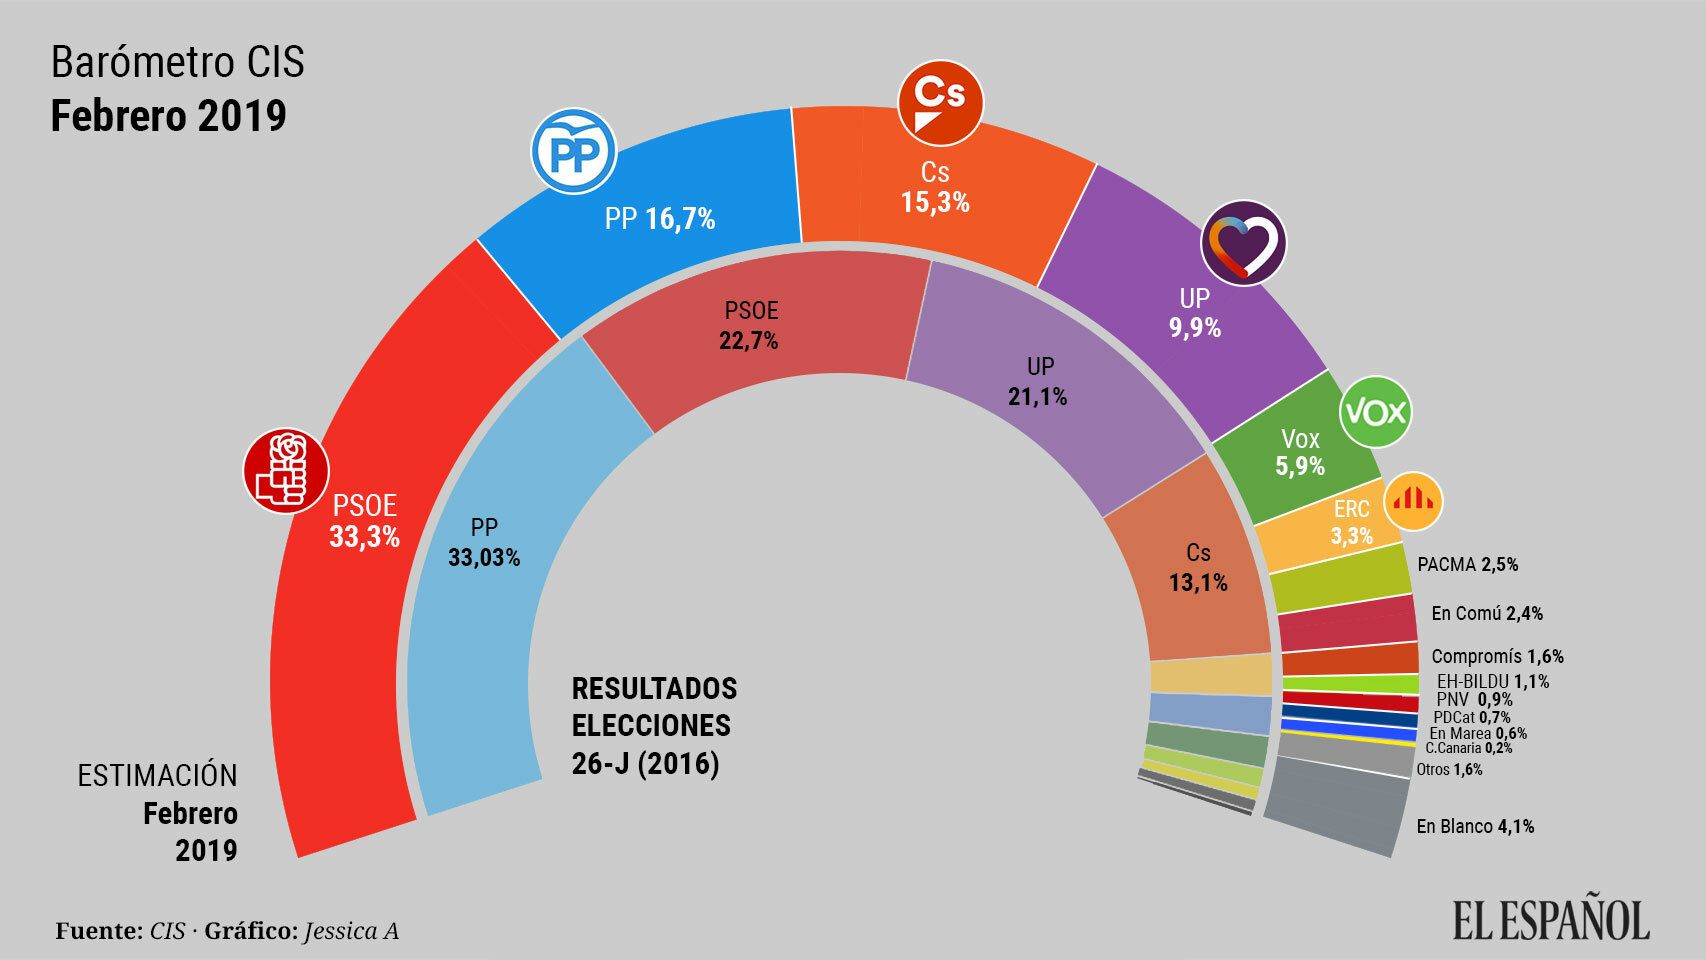 El CIS de Tezanos ya pone al PSOE en el 33,3% de los votos, más que la suma de PP y Ciudadanos